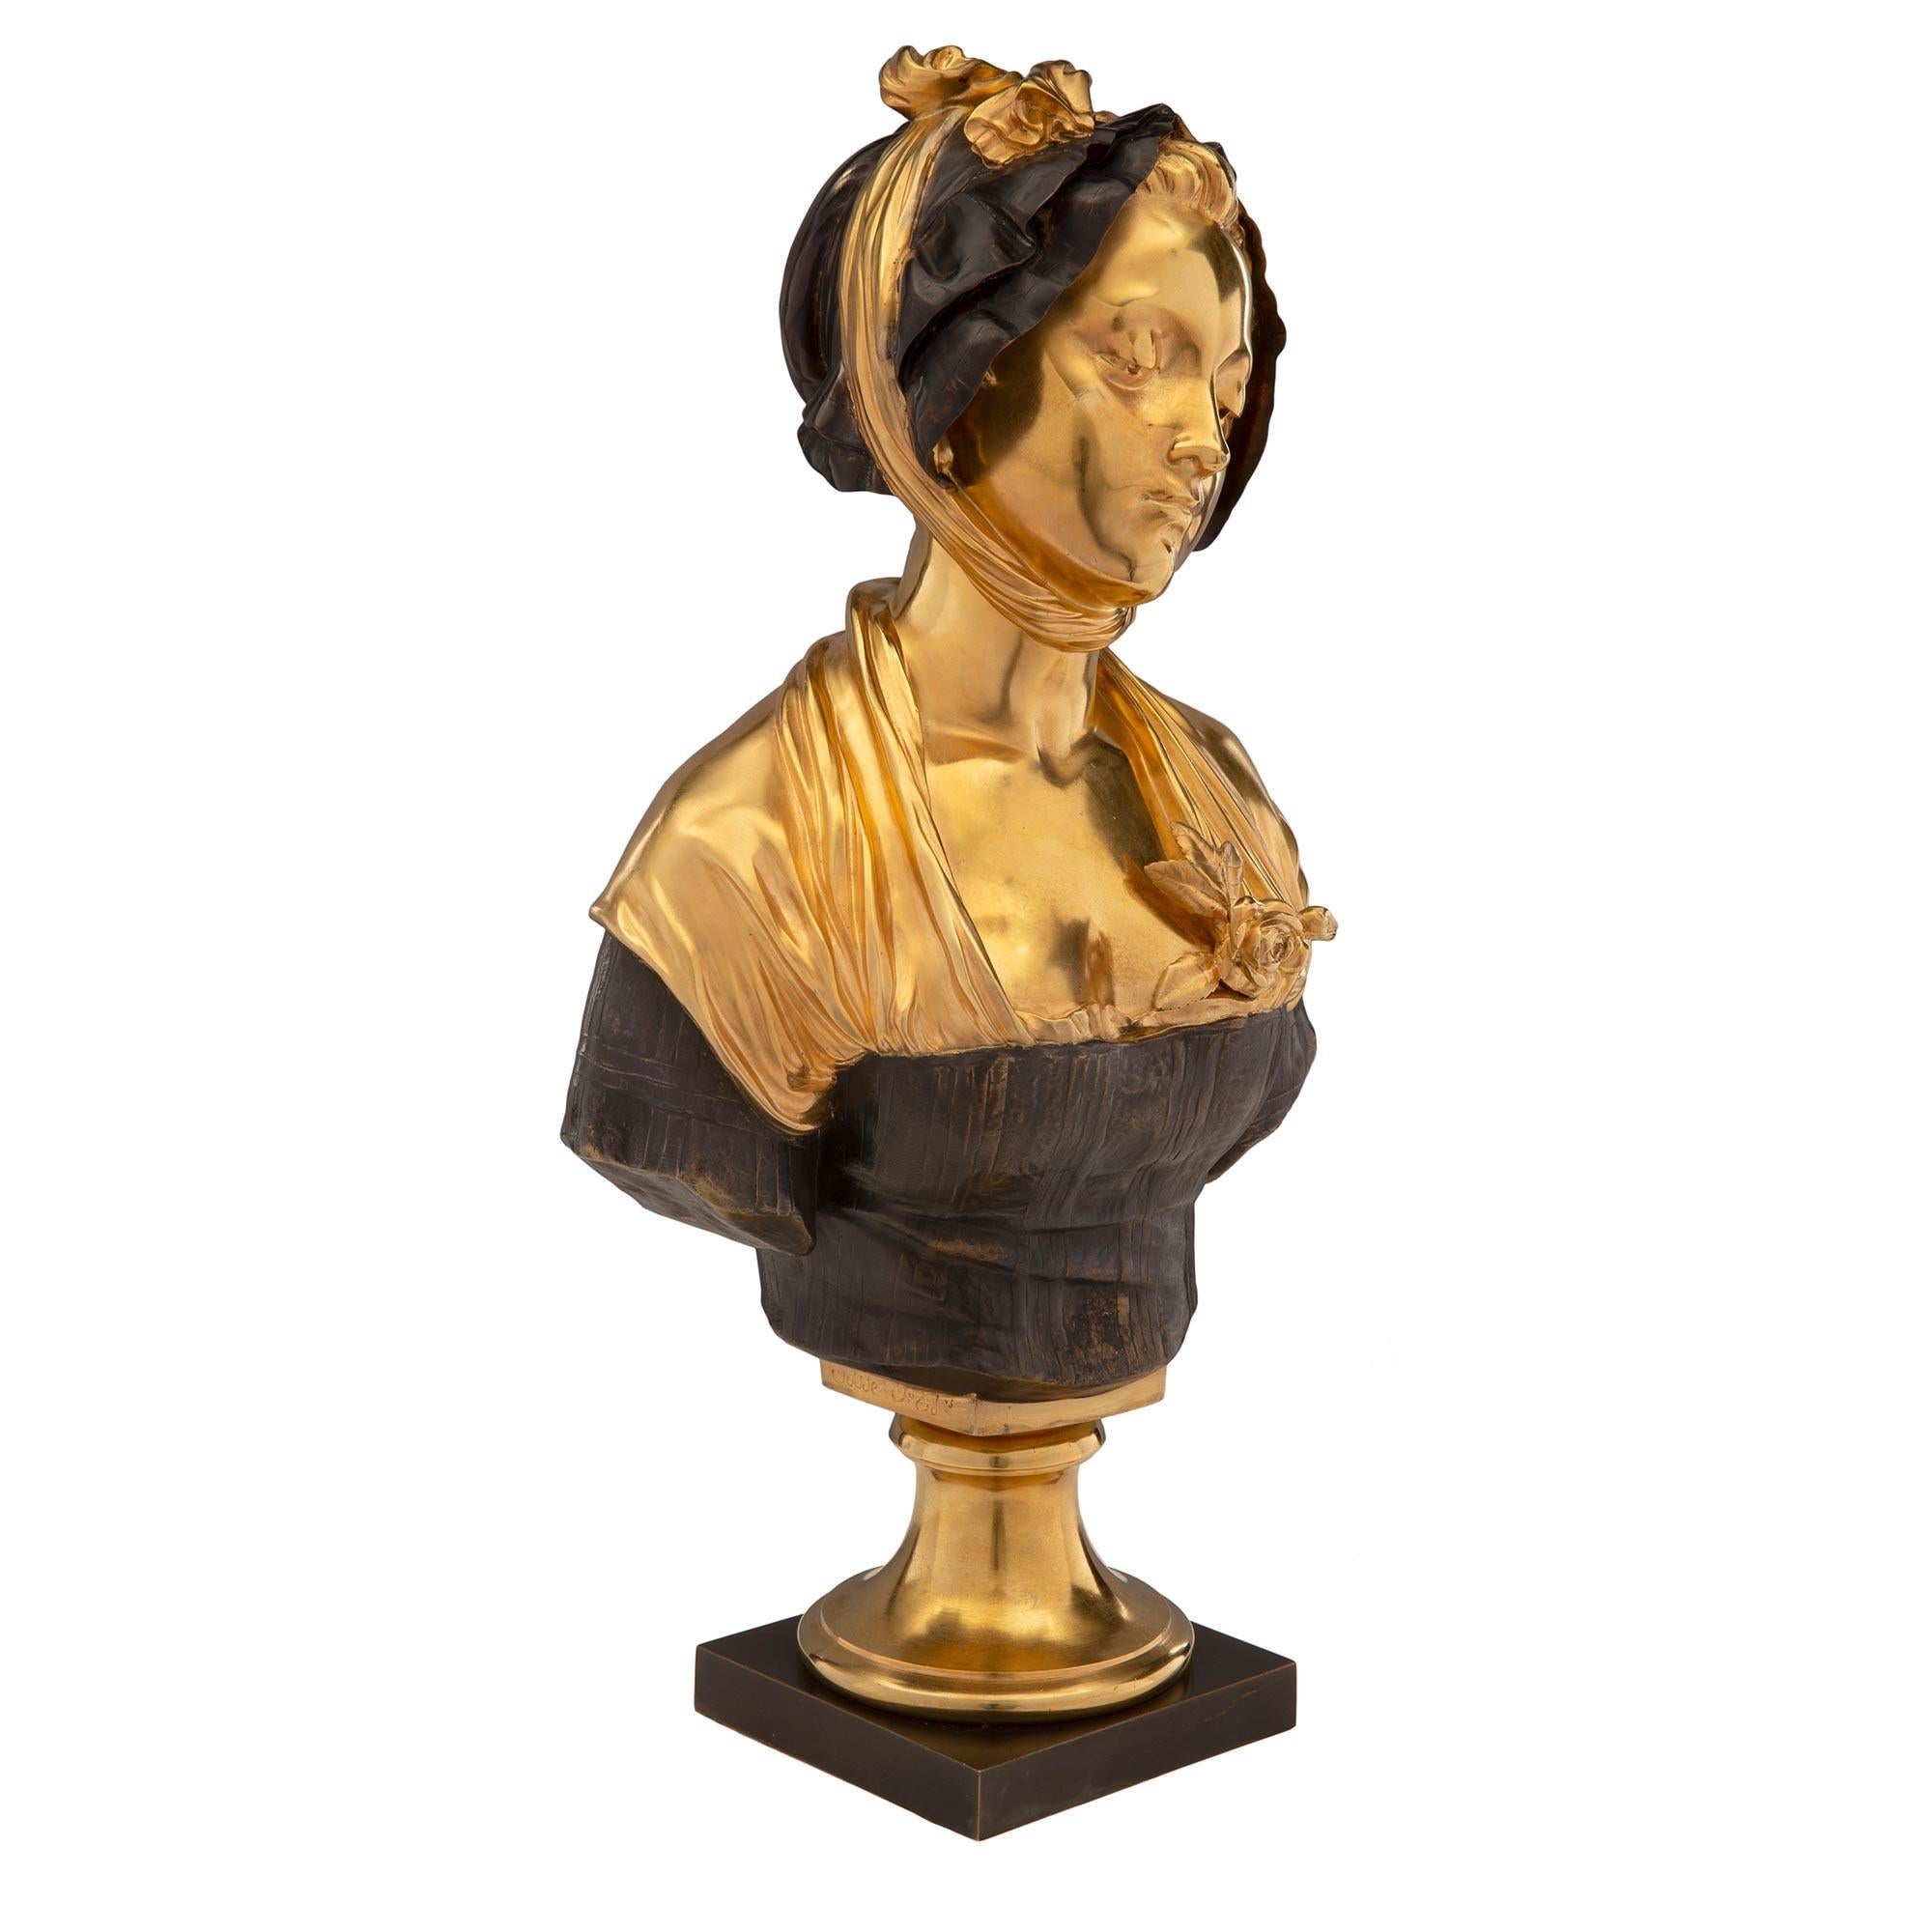 Encantador busto francés de bronce patinado y ormolina de una joven dama de mediados del siglo XIX, firmado por Elie-Joseph Laurent. El busto se eleva sobre un pedestal cuadrado de bronce patinado, bajo un zócalo circular de ormolina. La joven lleva